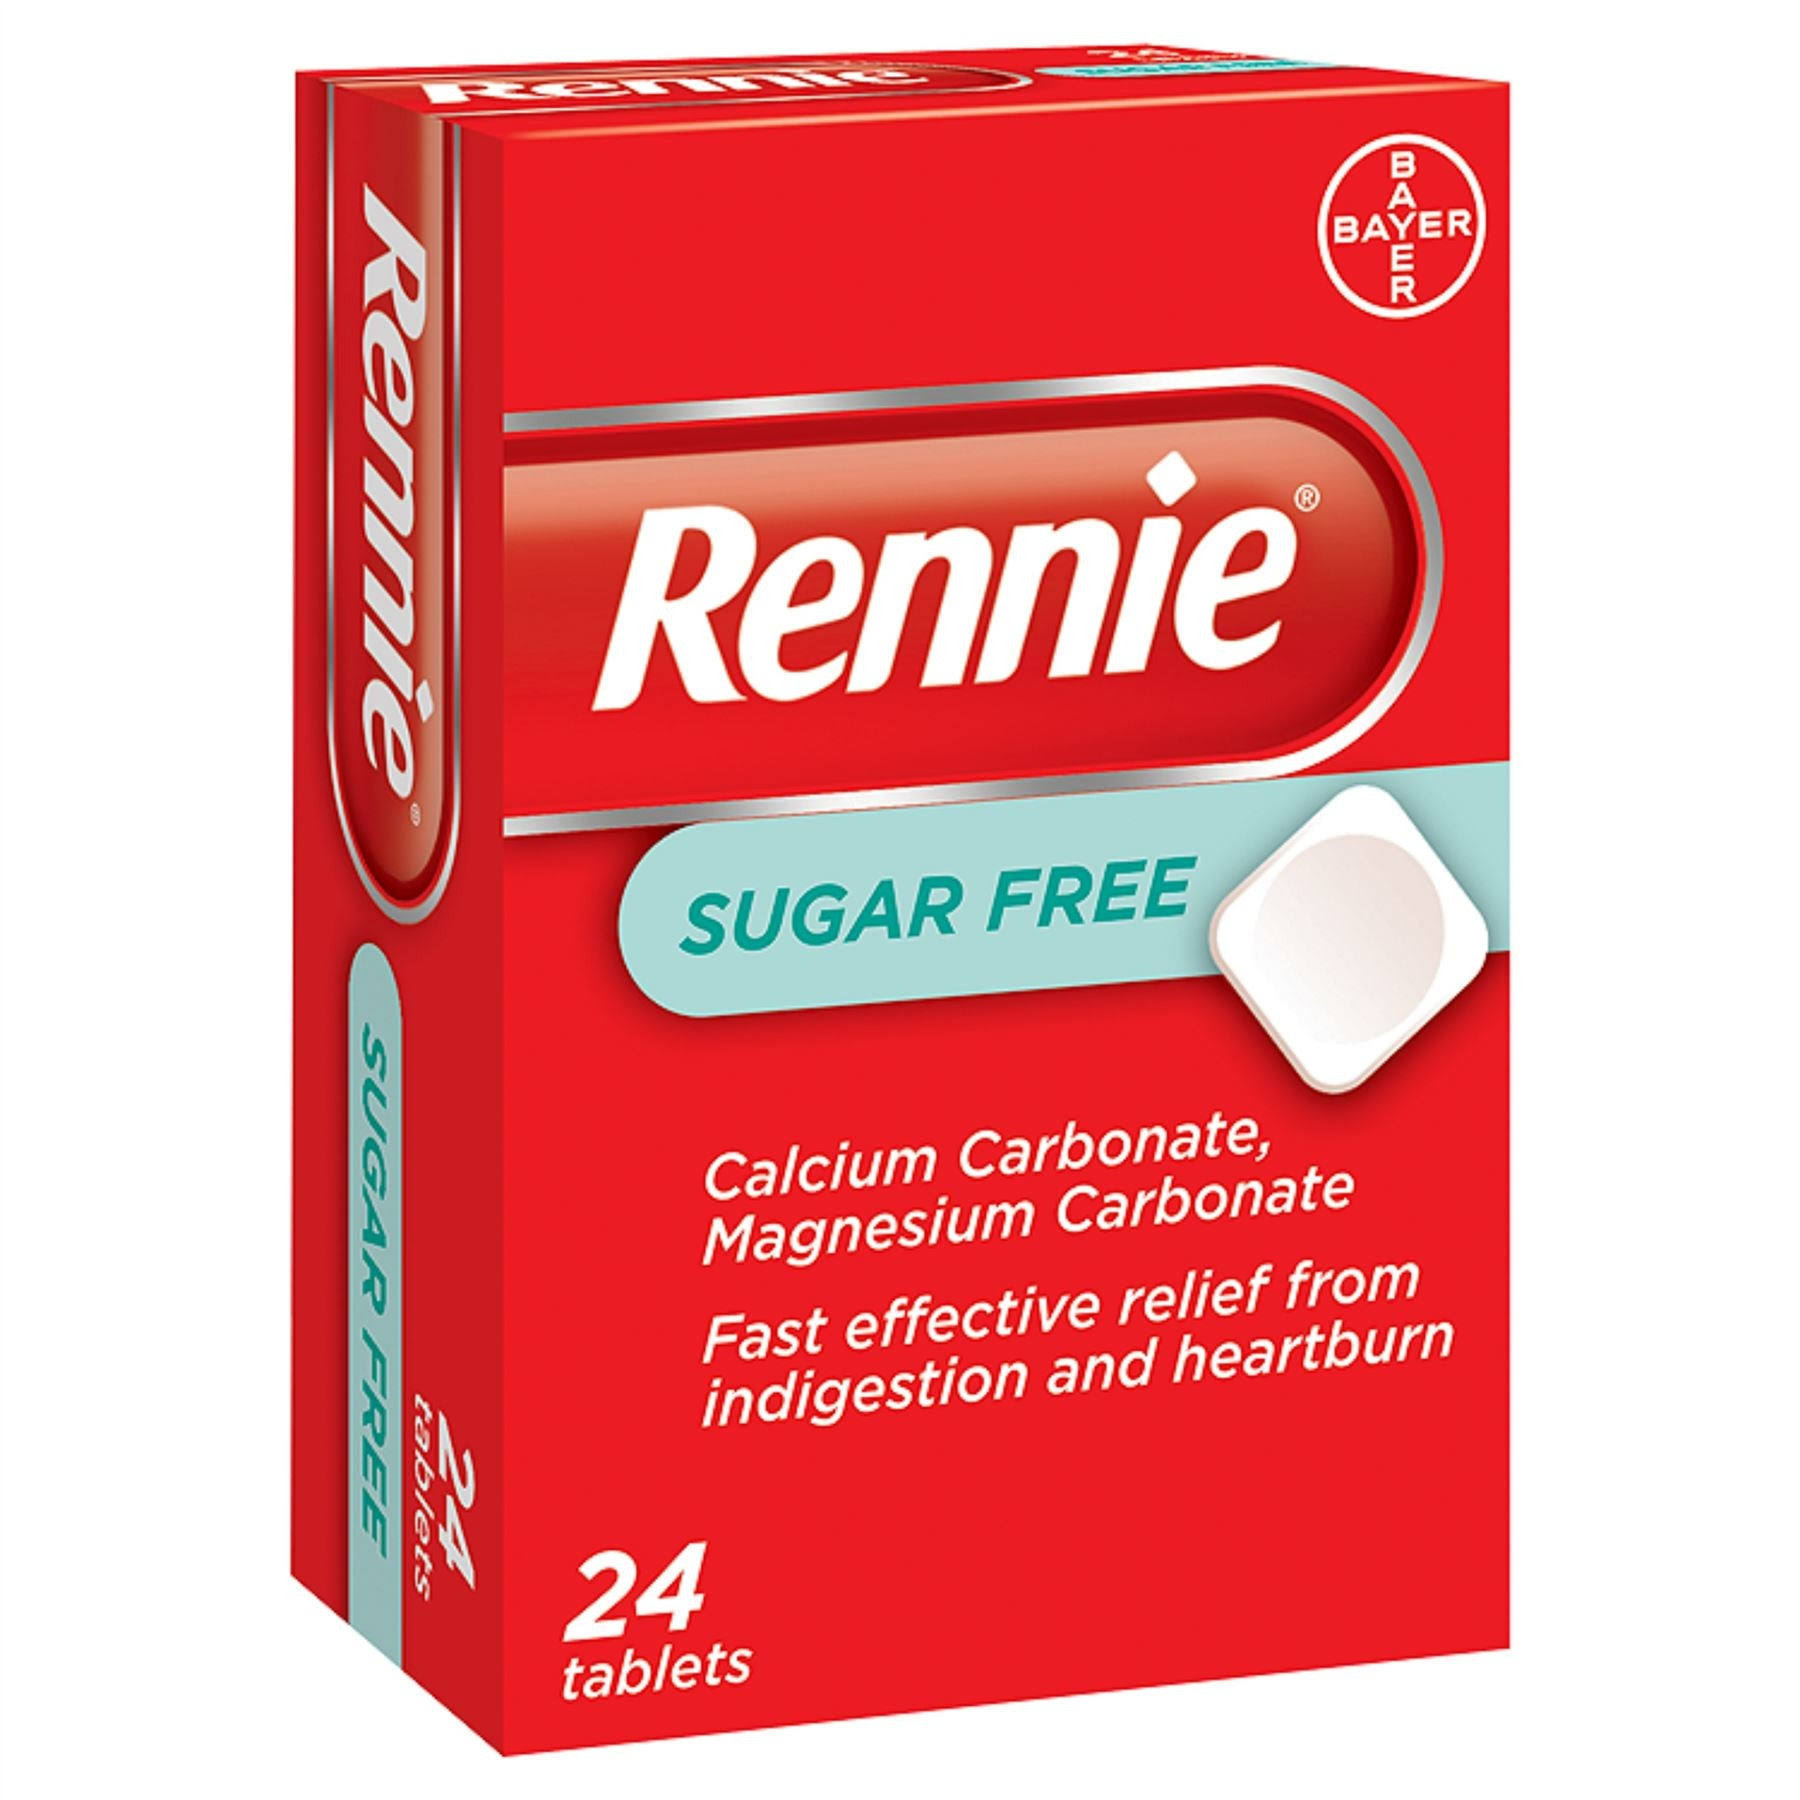 Rennie Sugar Free 24 Tablets